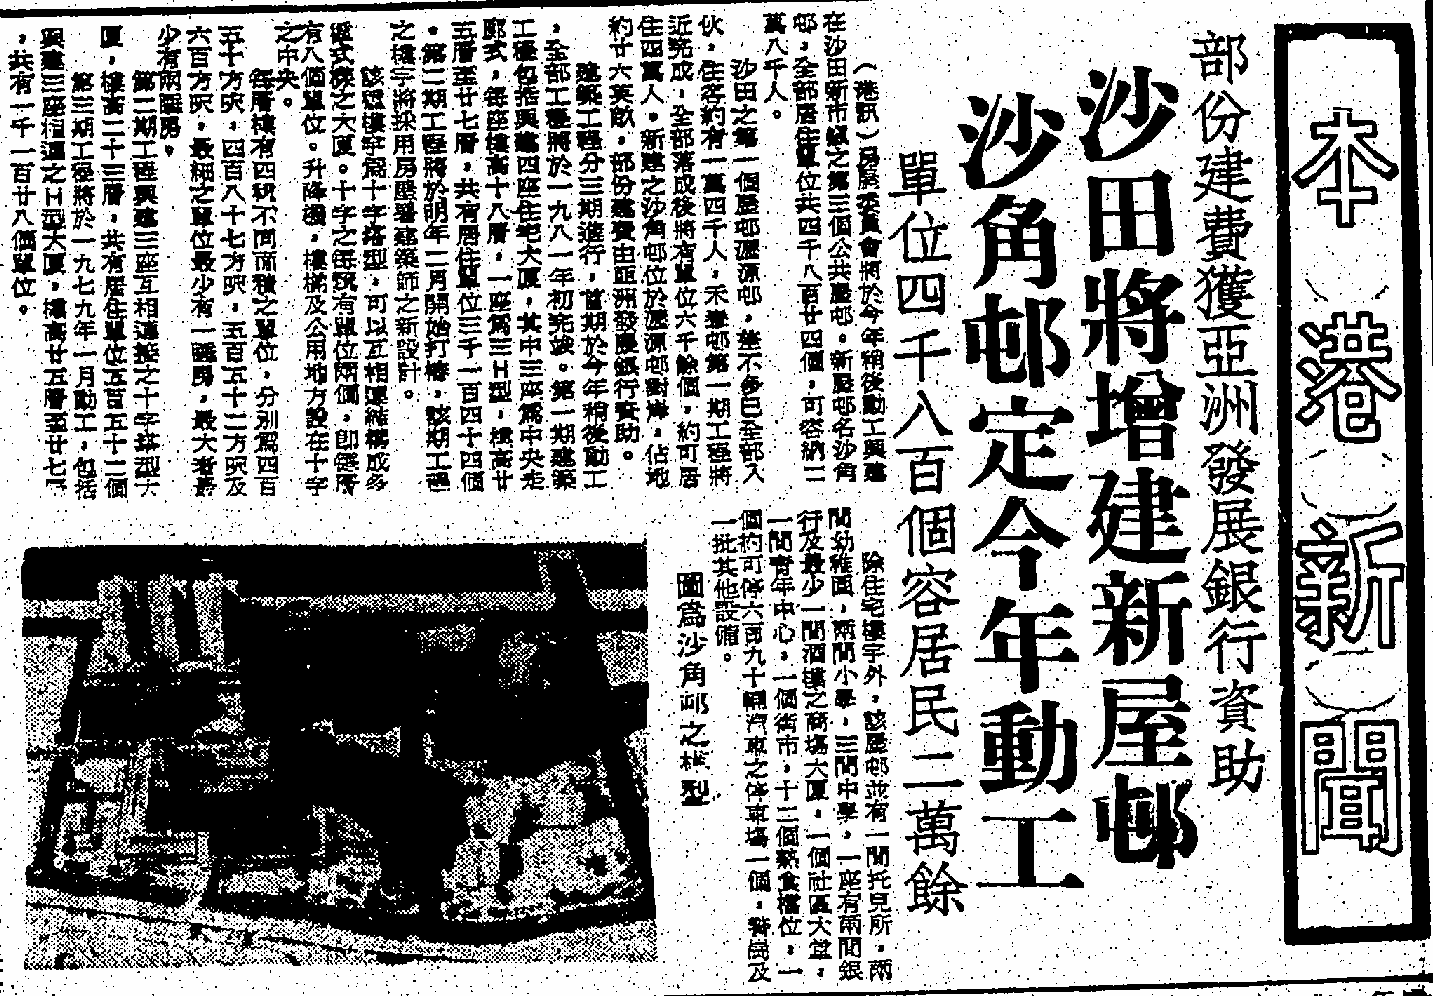 shakokestate_華僑日報_1977-06-06.png